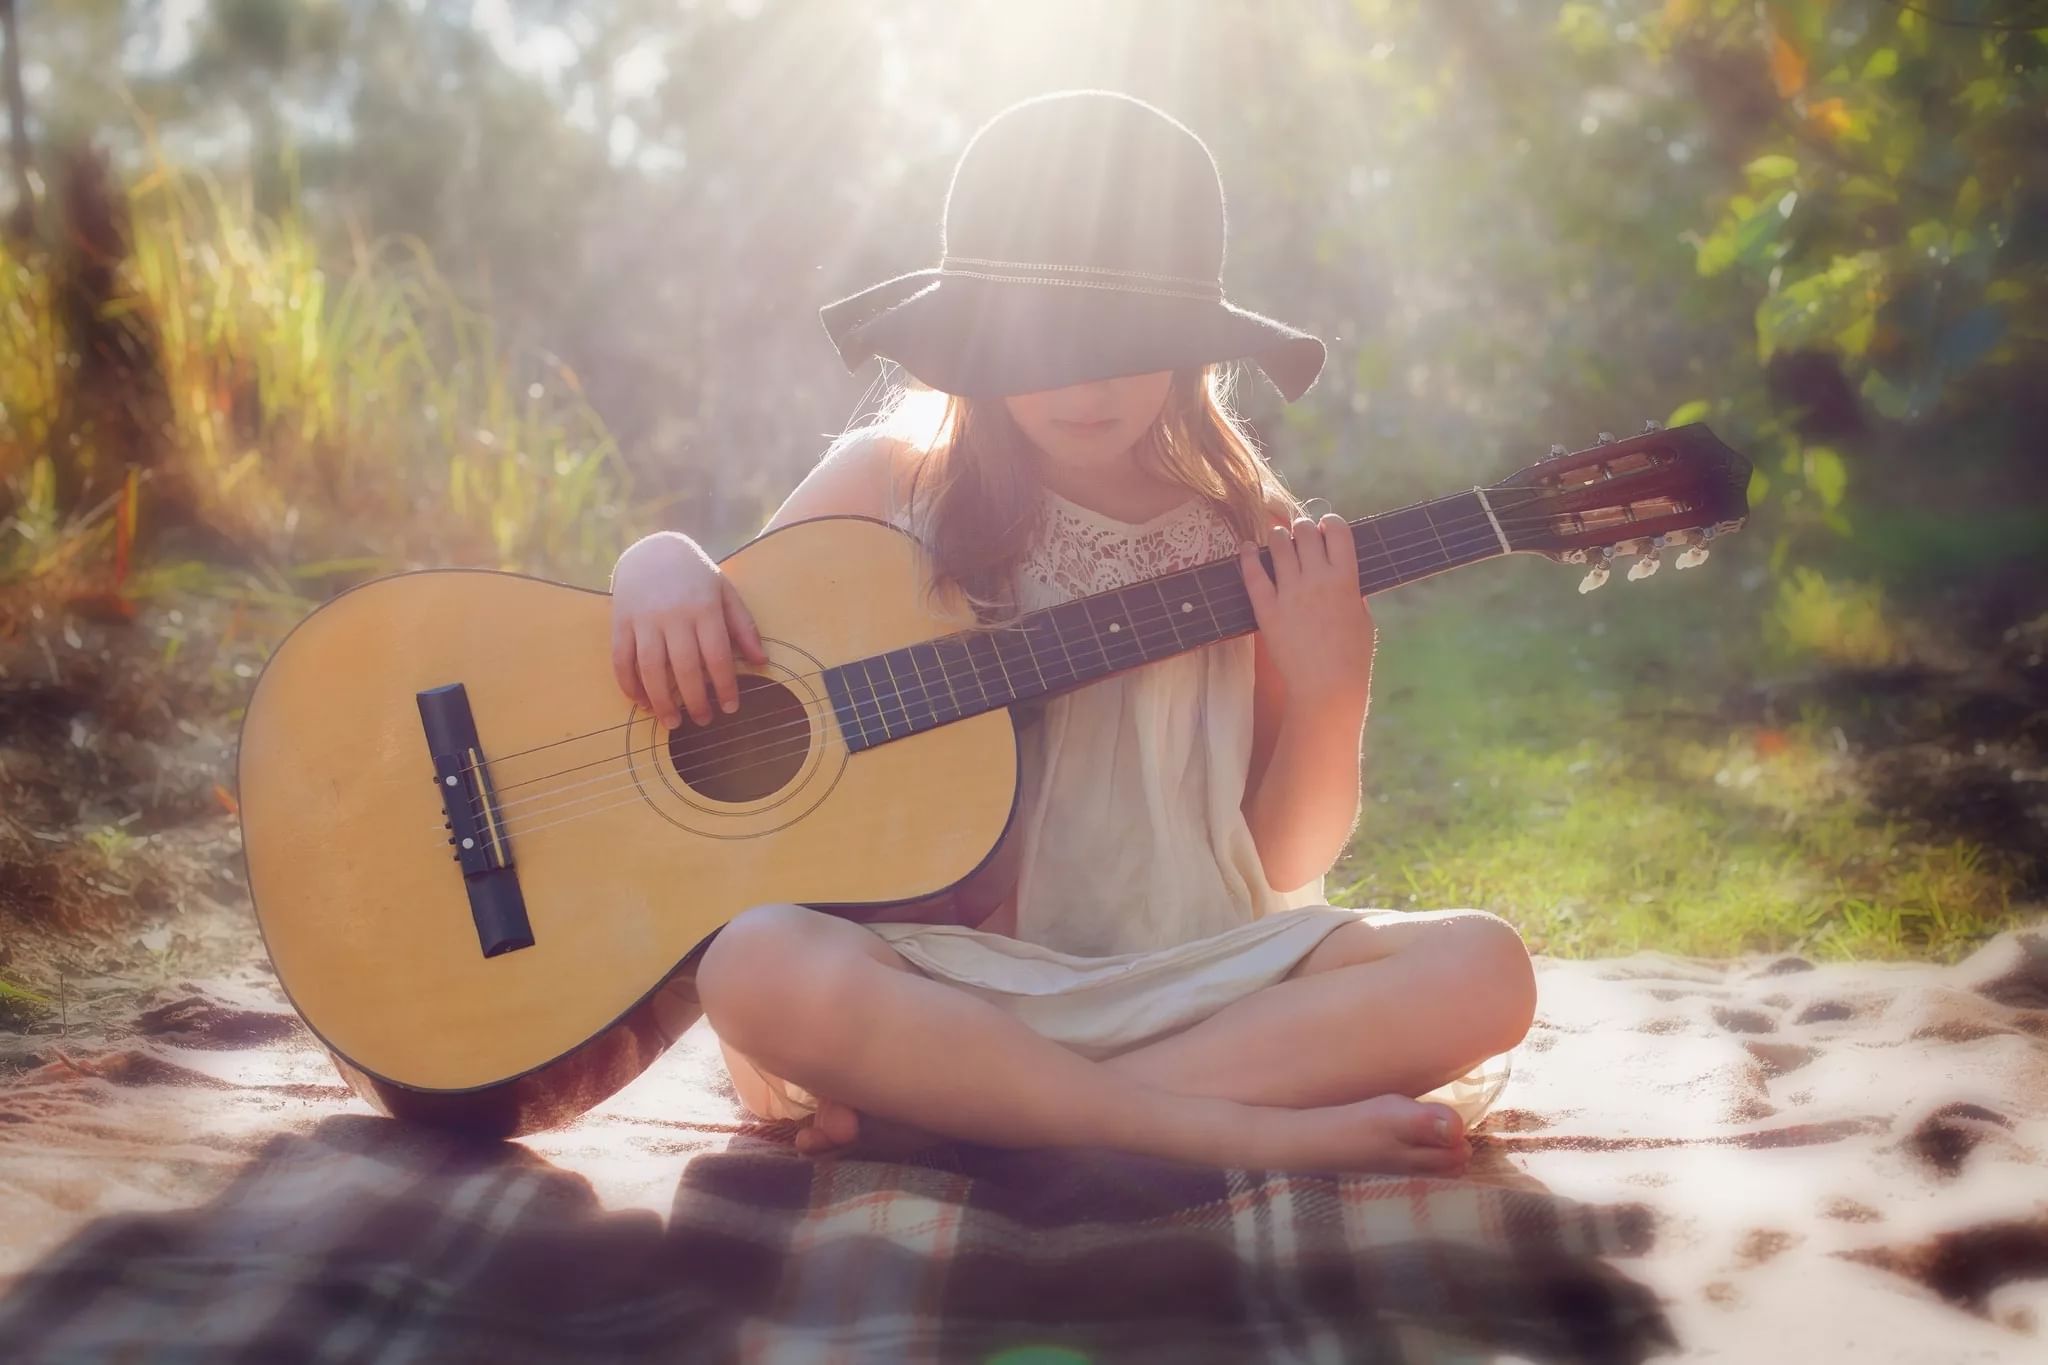 Слушать музыку гитару для души. Красивая девушка с гитарой. Девочка с гитарой. Фотосессия с гитарой. Девушка с акустической гитарой.